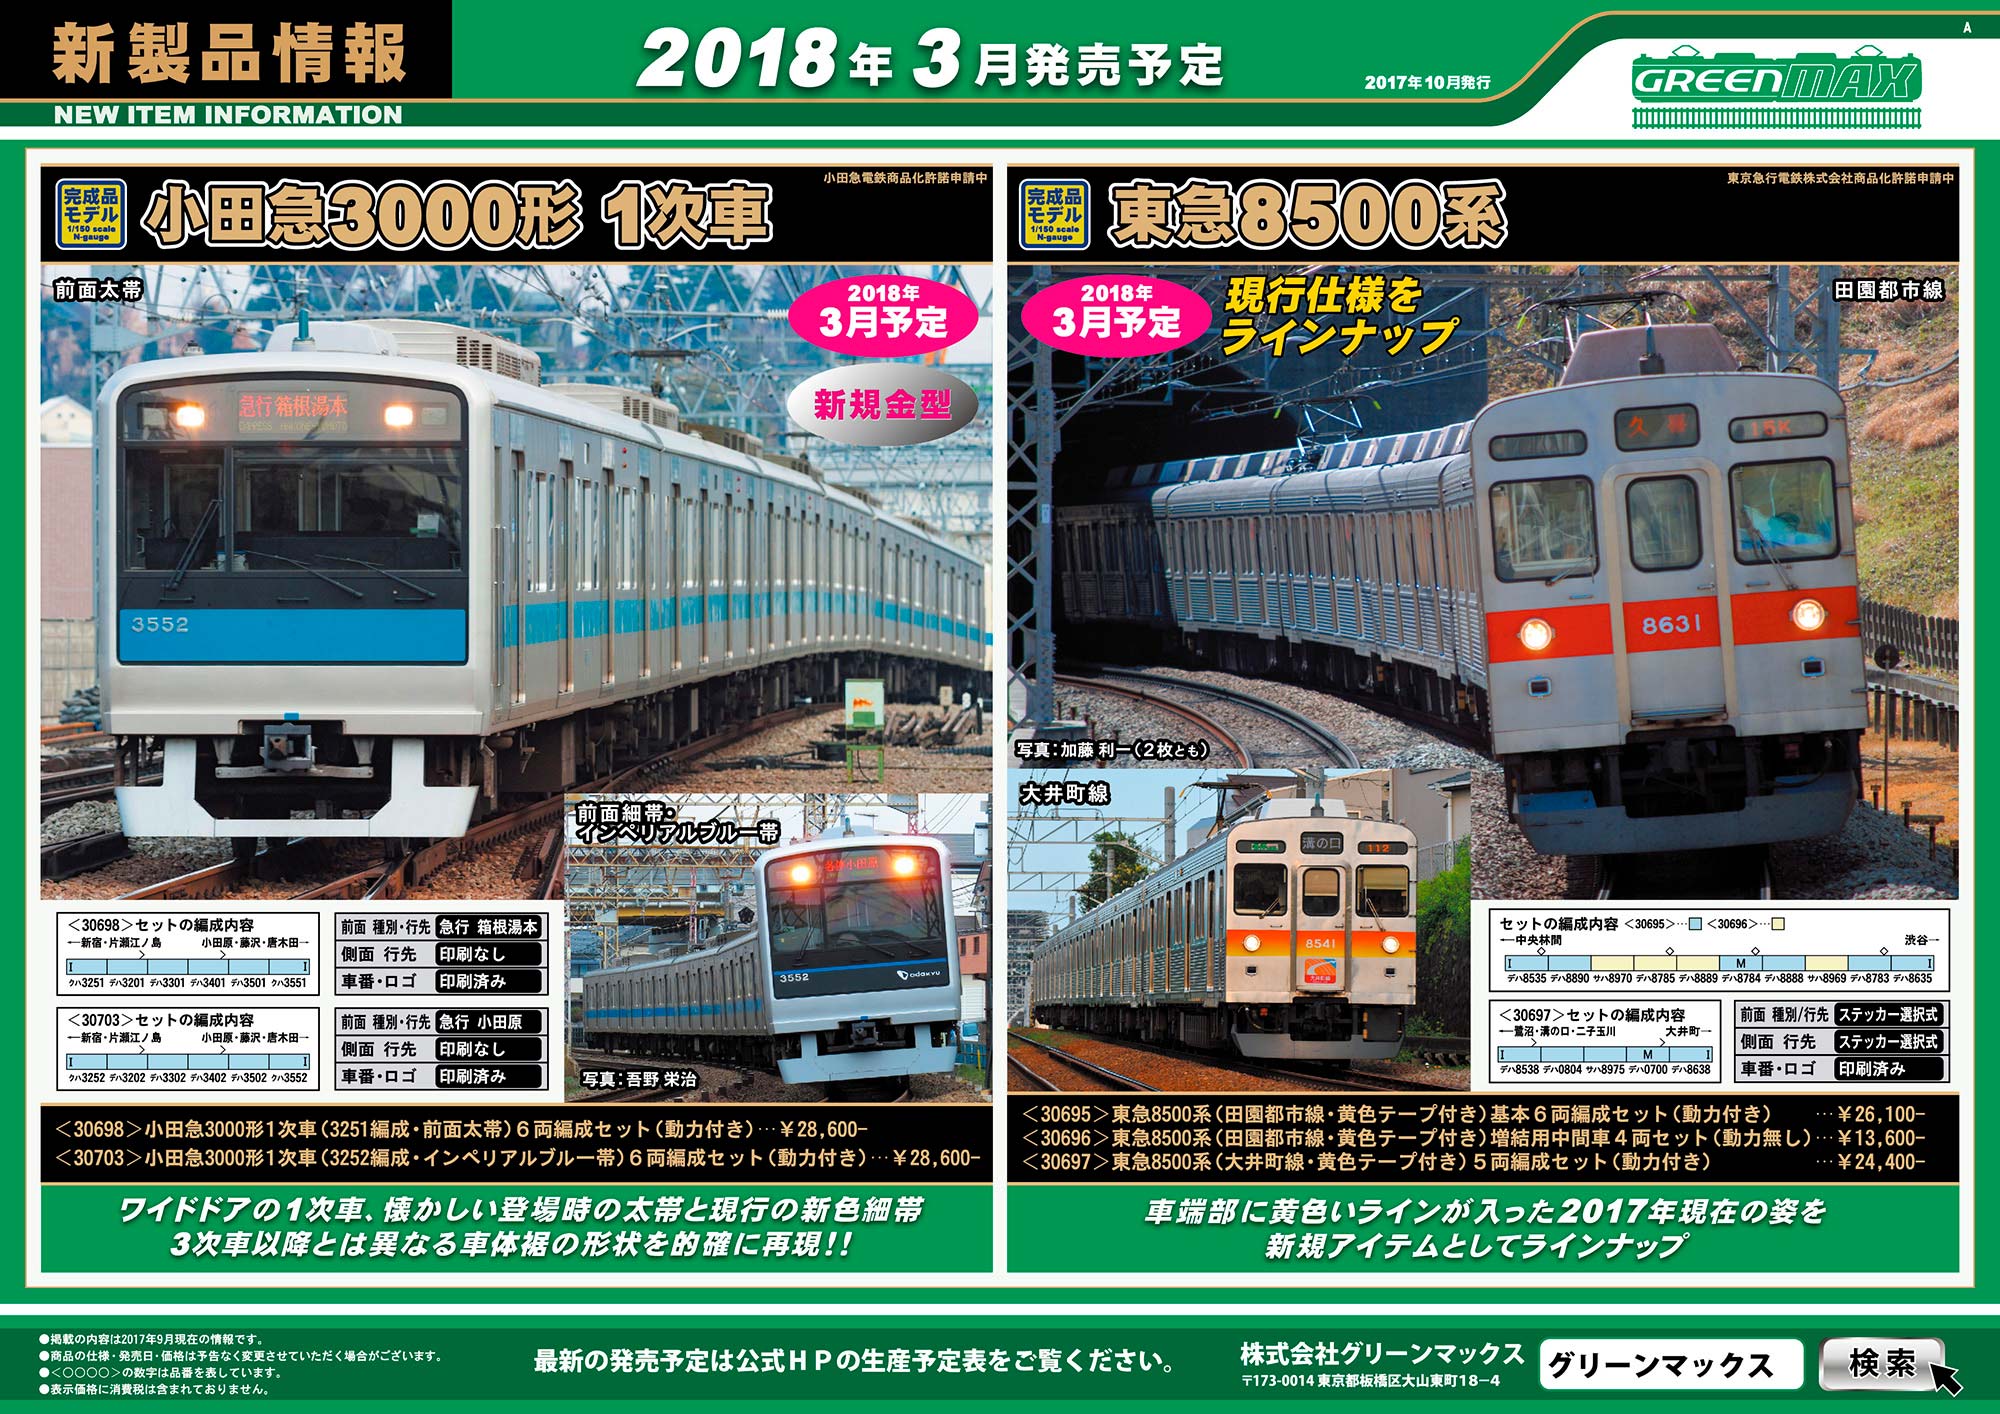 新製品案内 ] 西武新2000系前期形新宿線、小田急3000形1次車、東急8500 